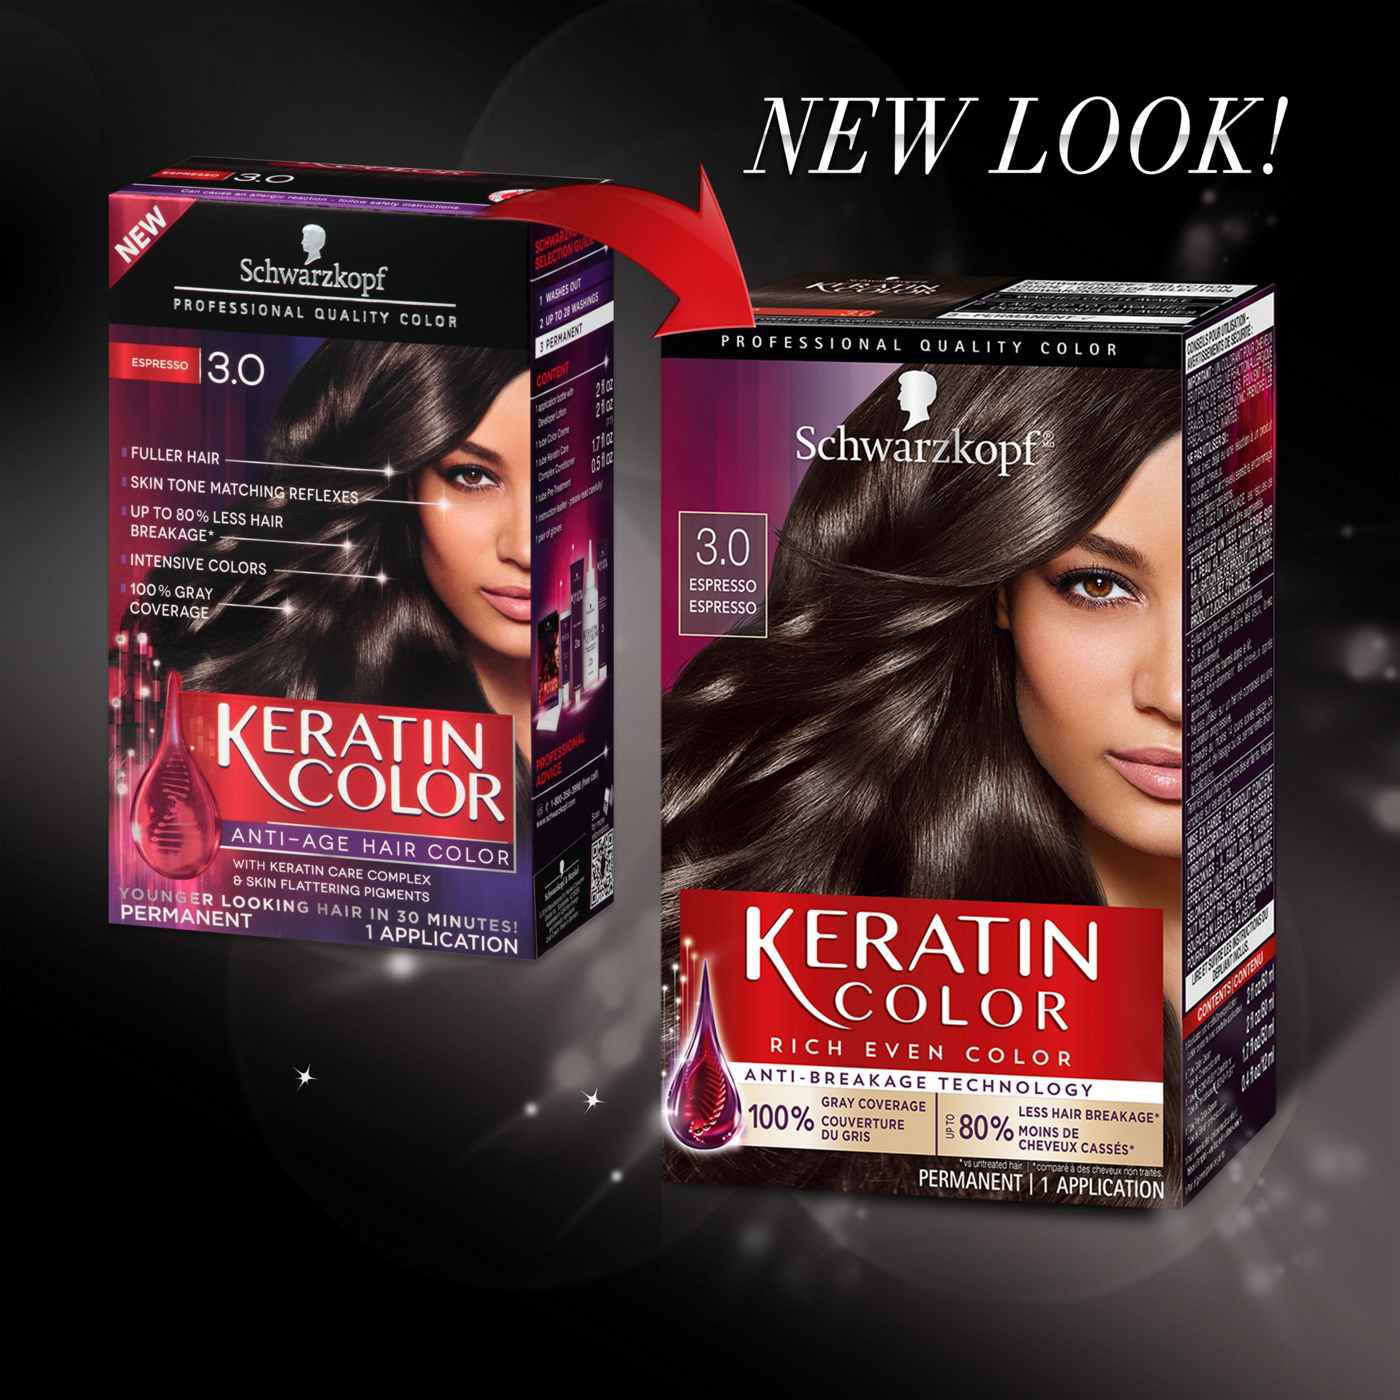 Schwarzkopf Keratin Color Permanent Hair Color - 3.0 Espresso; image 3 of 5